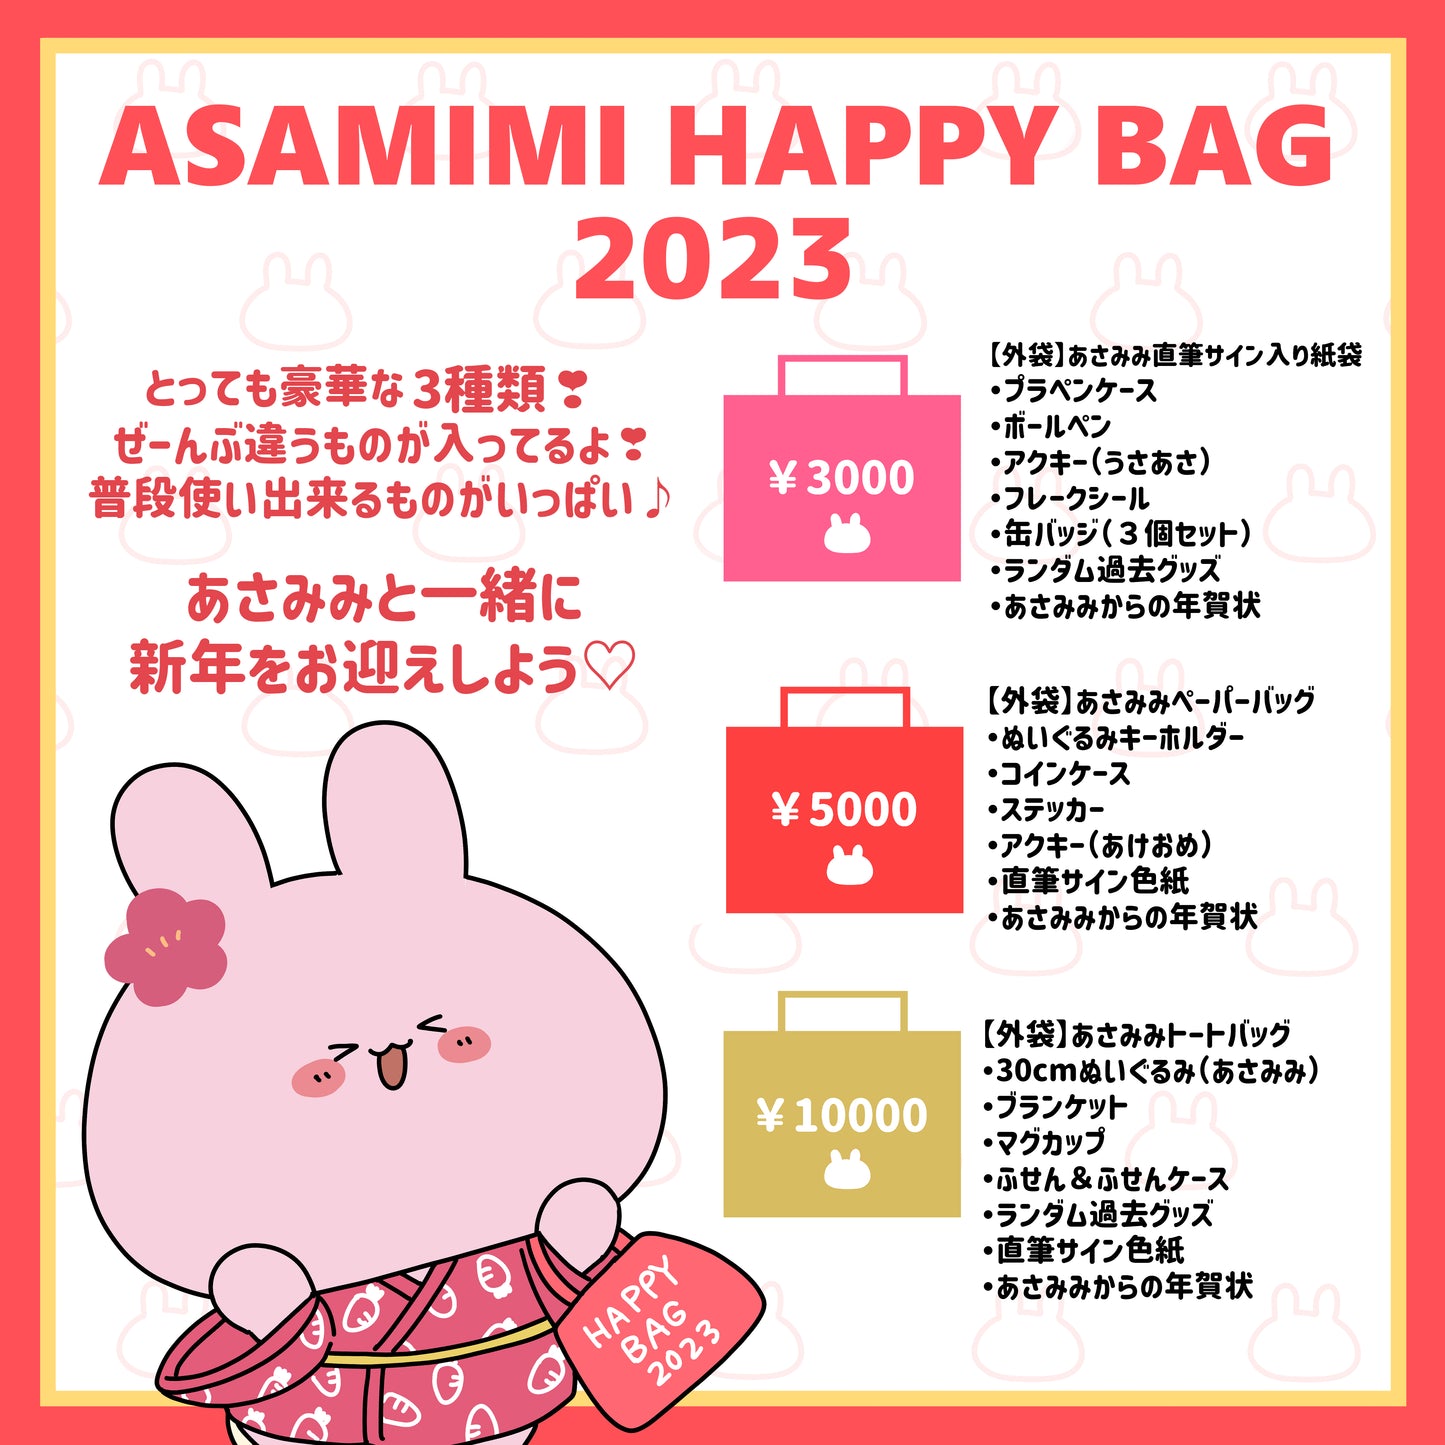 [Asamimi醬] ASAMIMI HAPPY BAG (5,000日元) [限量預訂銷售]